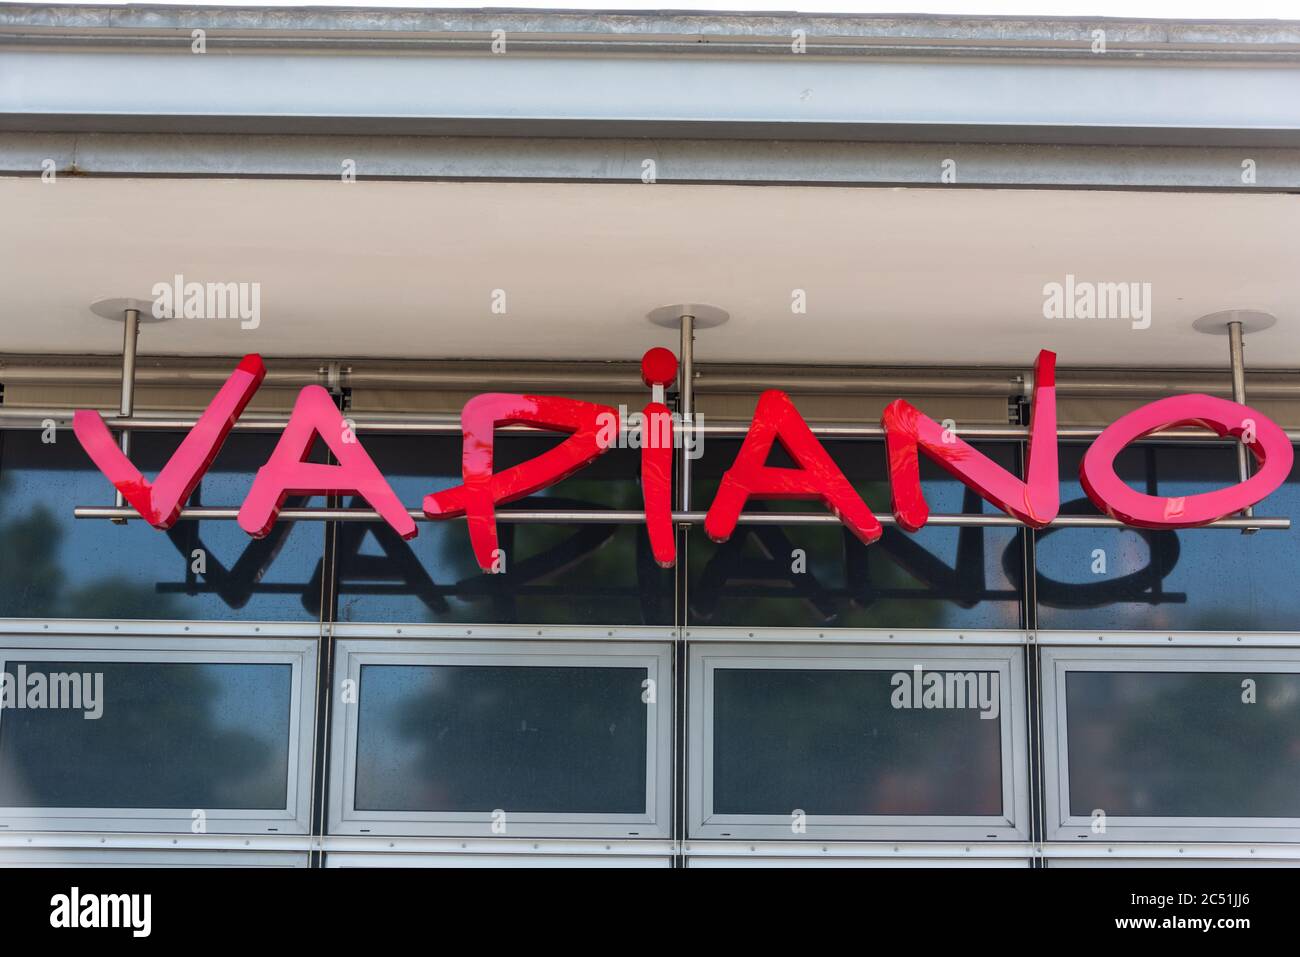 Schriftzug Vapiano der Restaurantkette gleichen namens im Hafen von Kiel Foto Stock